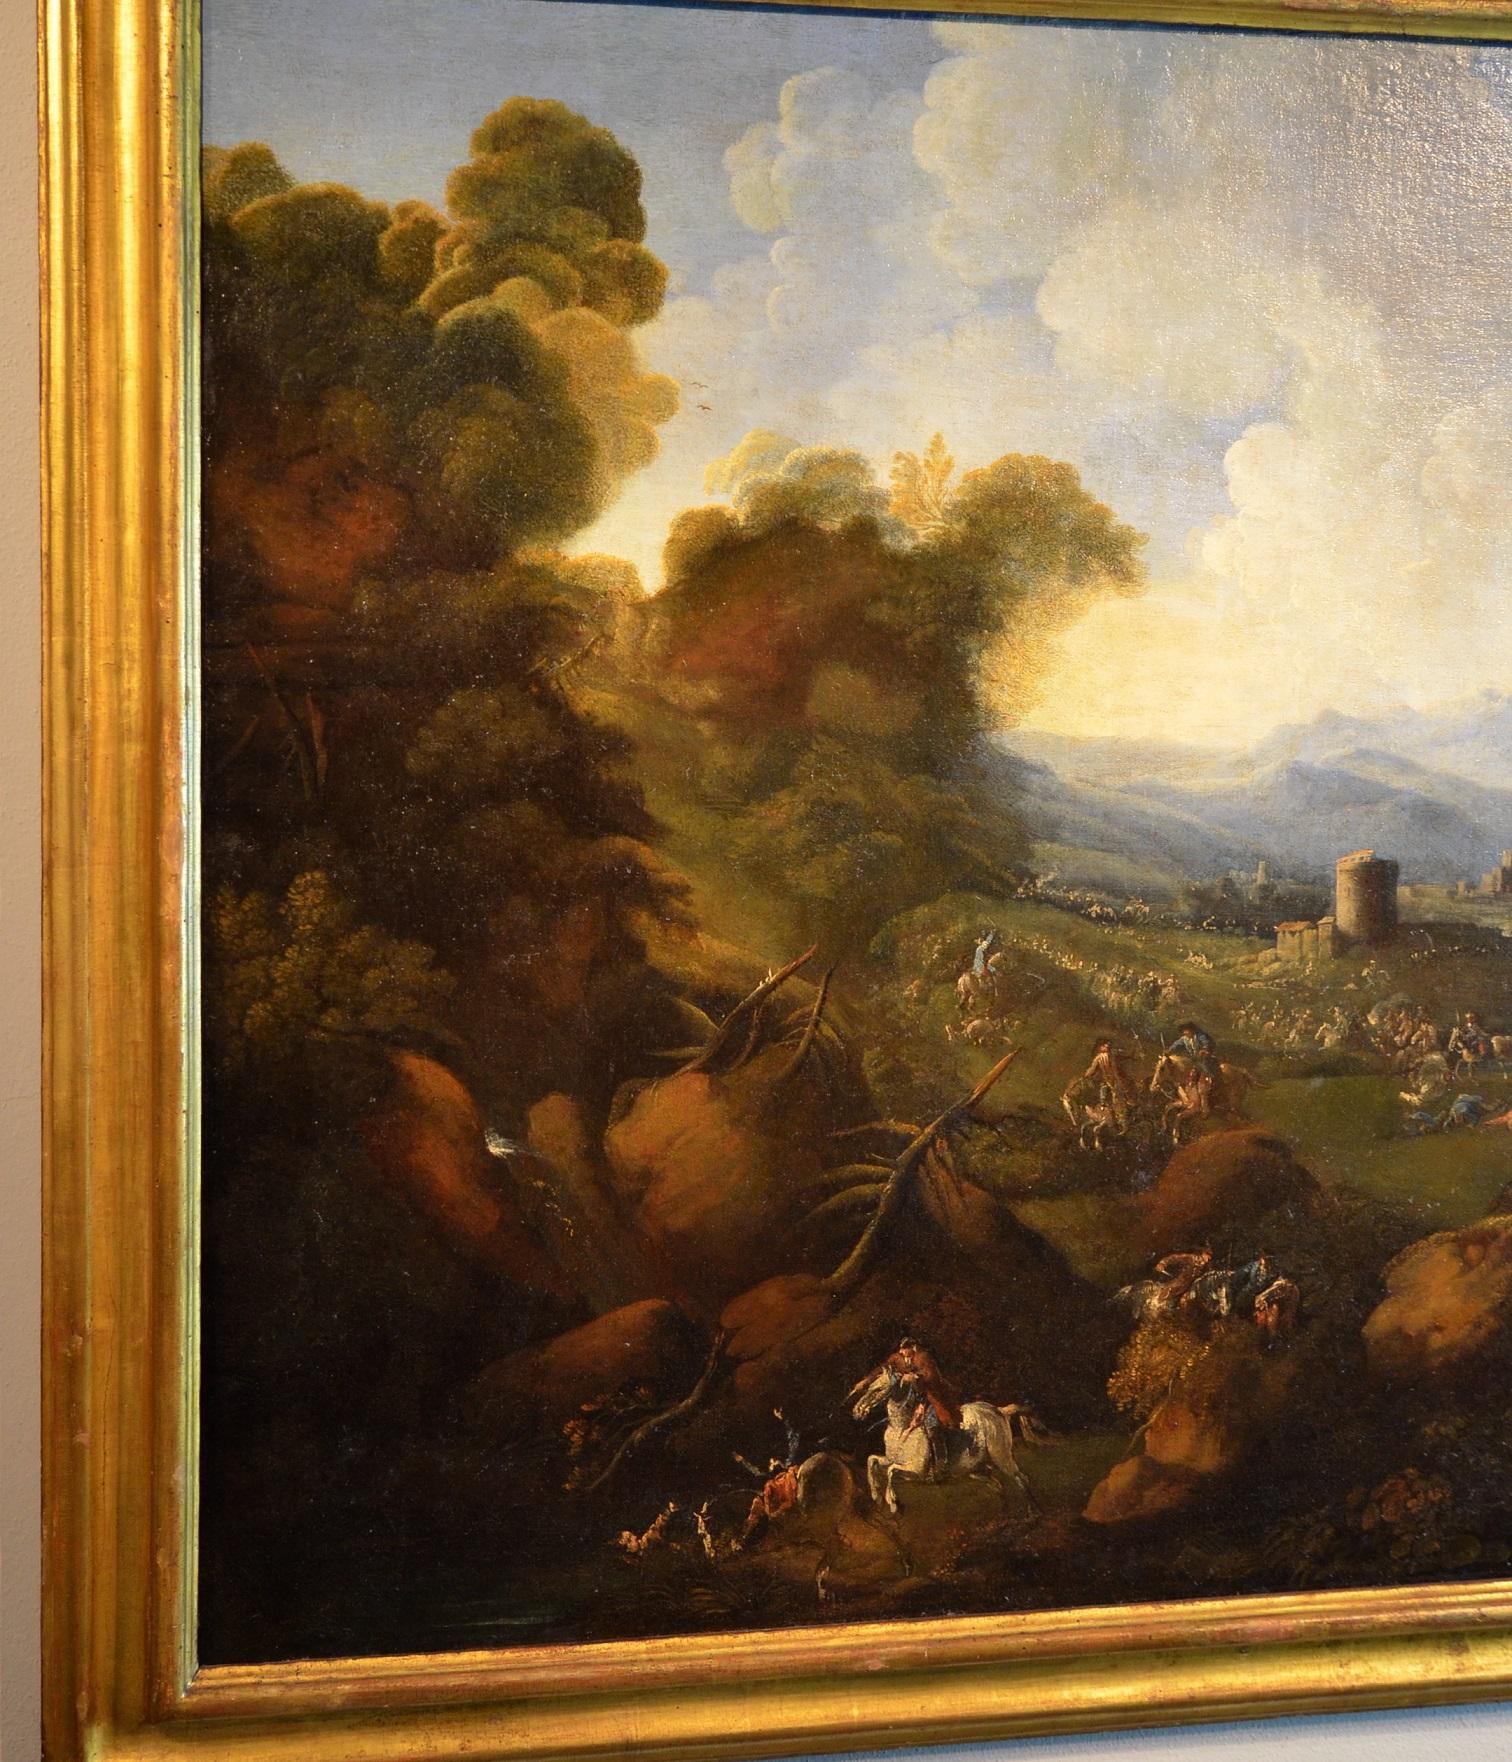 Pandolfo Reschi dit Monsù Pandolfo (Danzica 1643 - Florence 1699), attribuable
Paysage côtier avec ville fortifiée, château avec tour et scène de bataille
peinture à l'huile sur toile
Dimensions : toile 90 x 120, avec cadre 104 x 134

Ce vaste